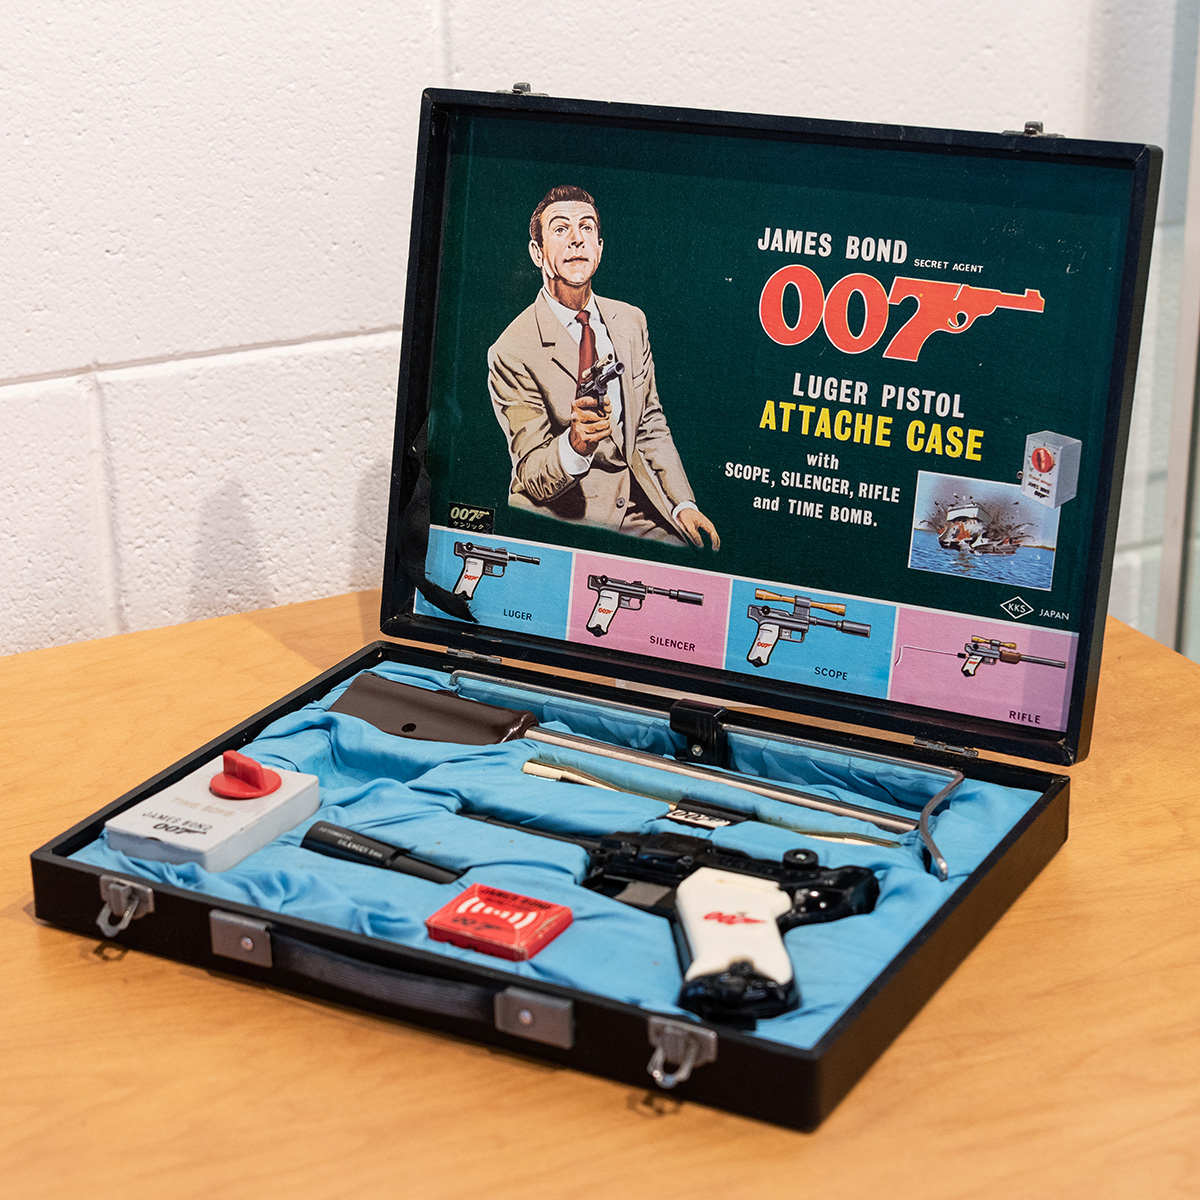 James Bond Secret Agent 007 Shooting Attache Case auction potter